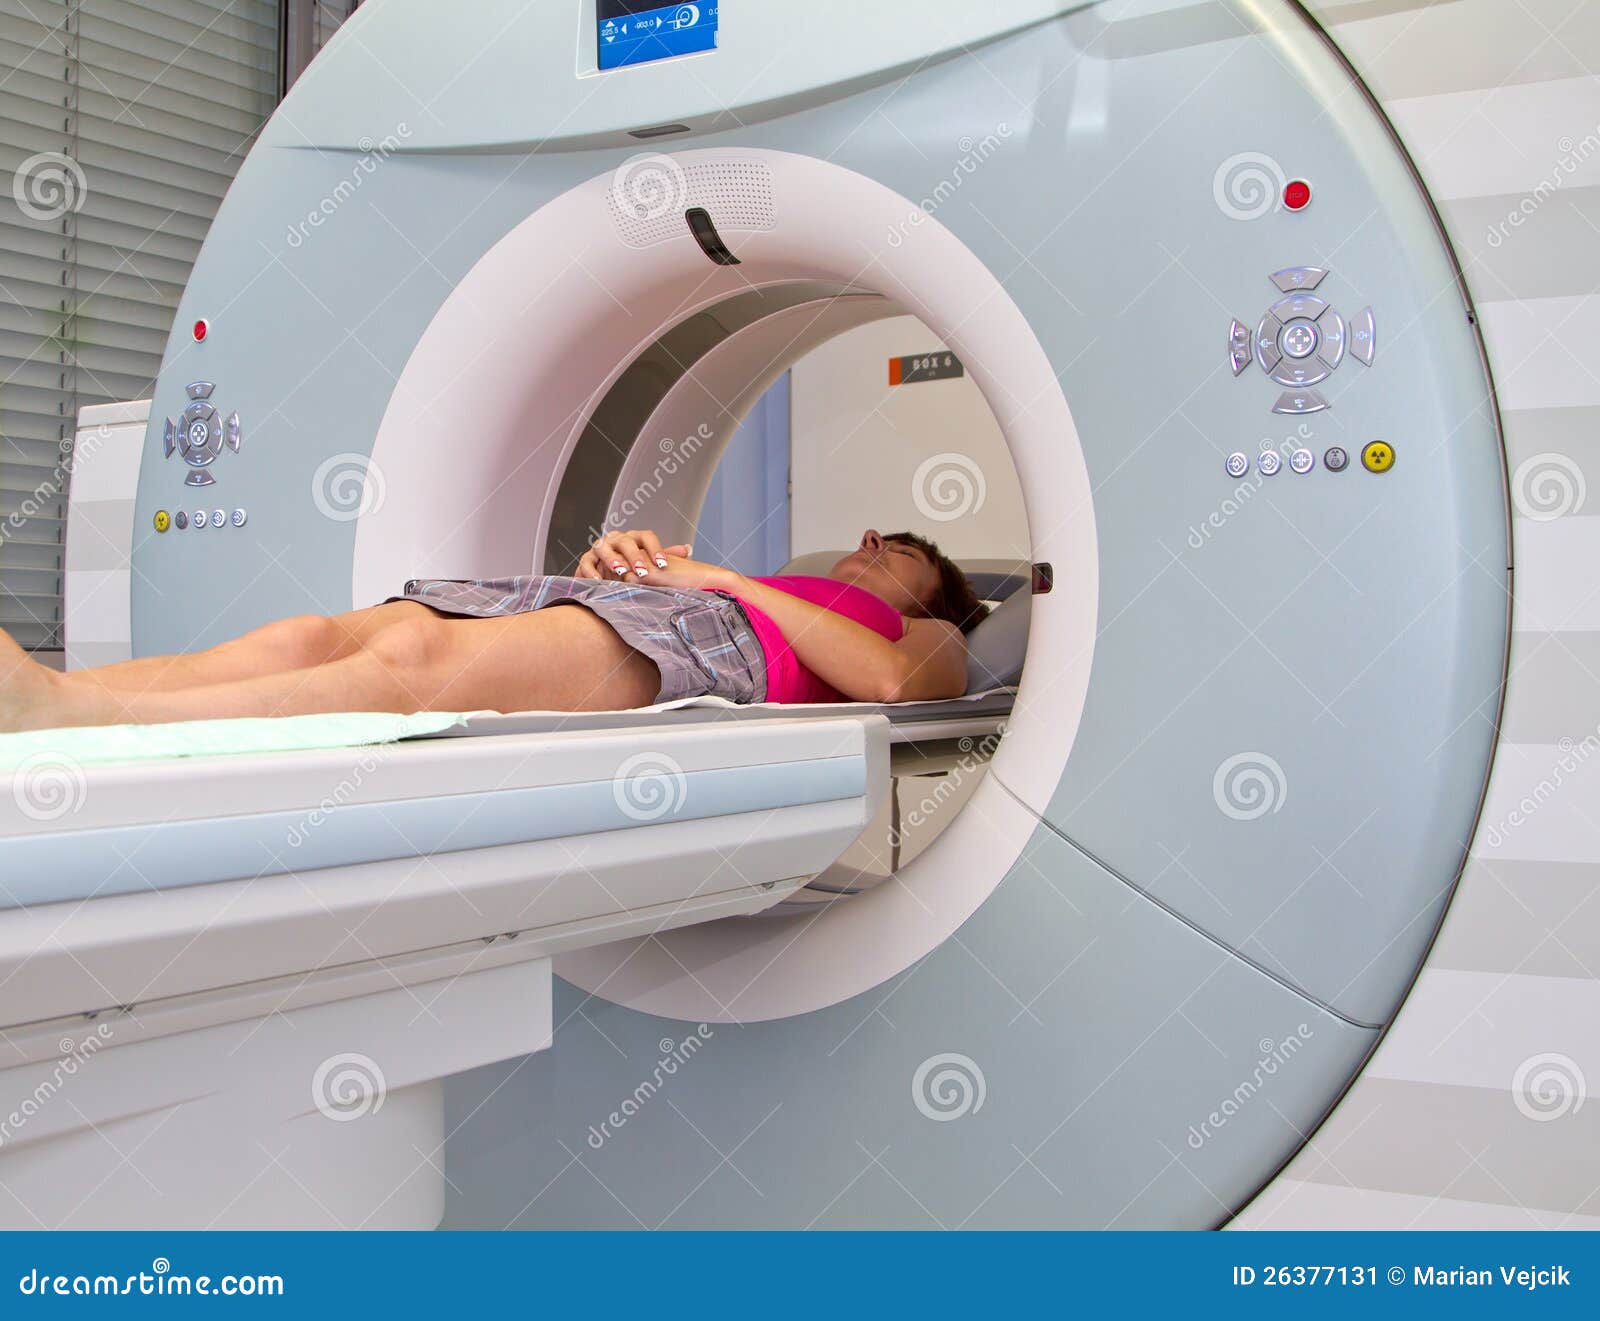 磁反应. MRI想象设备在医院